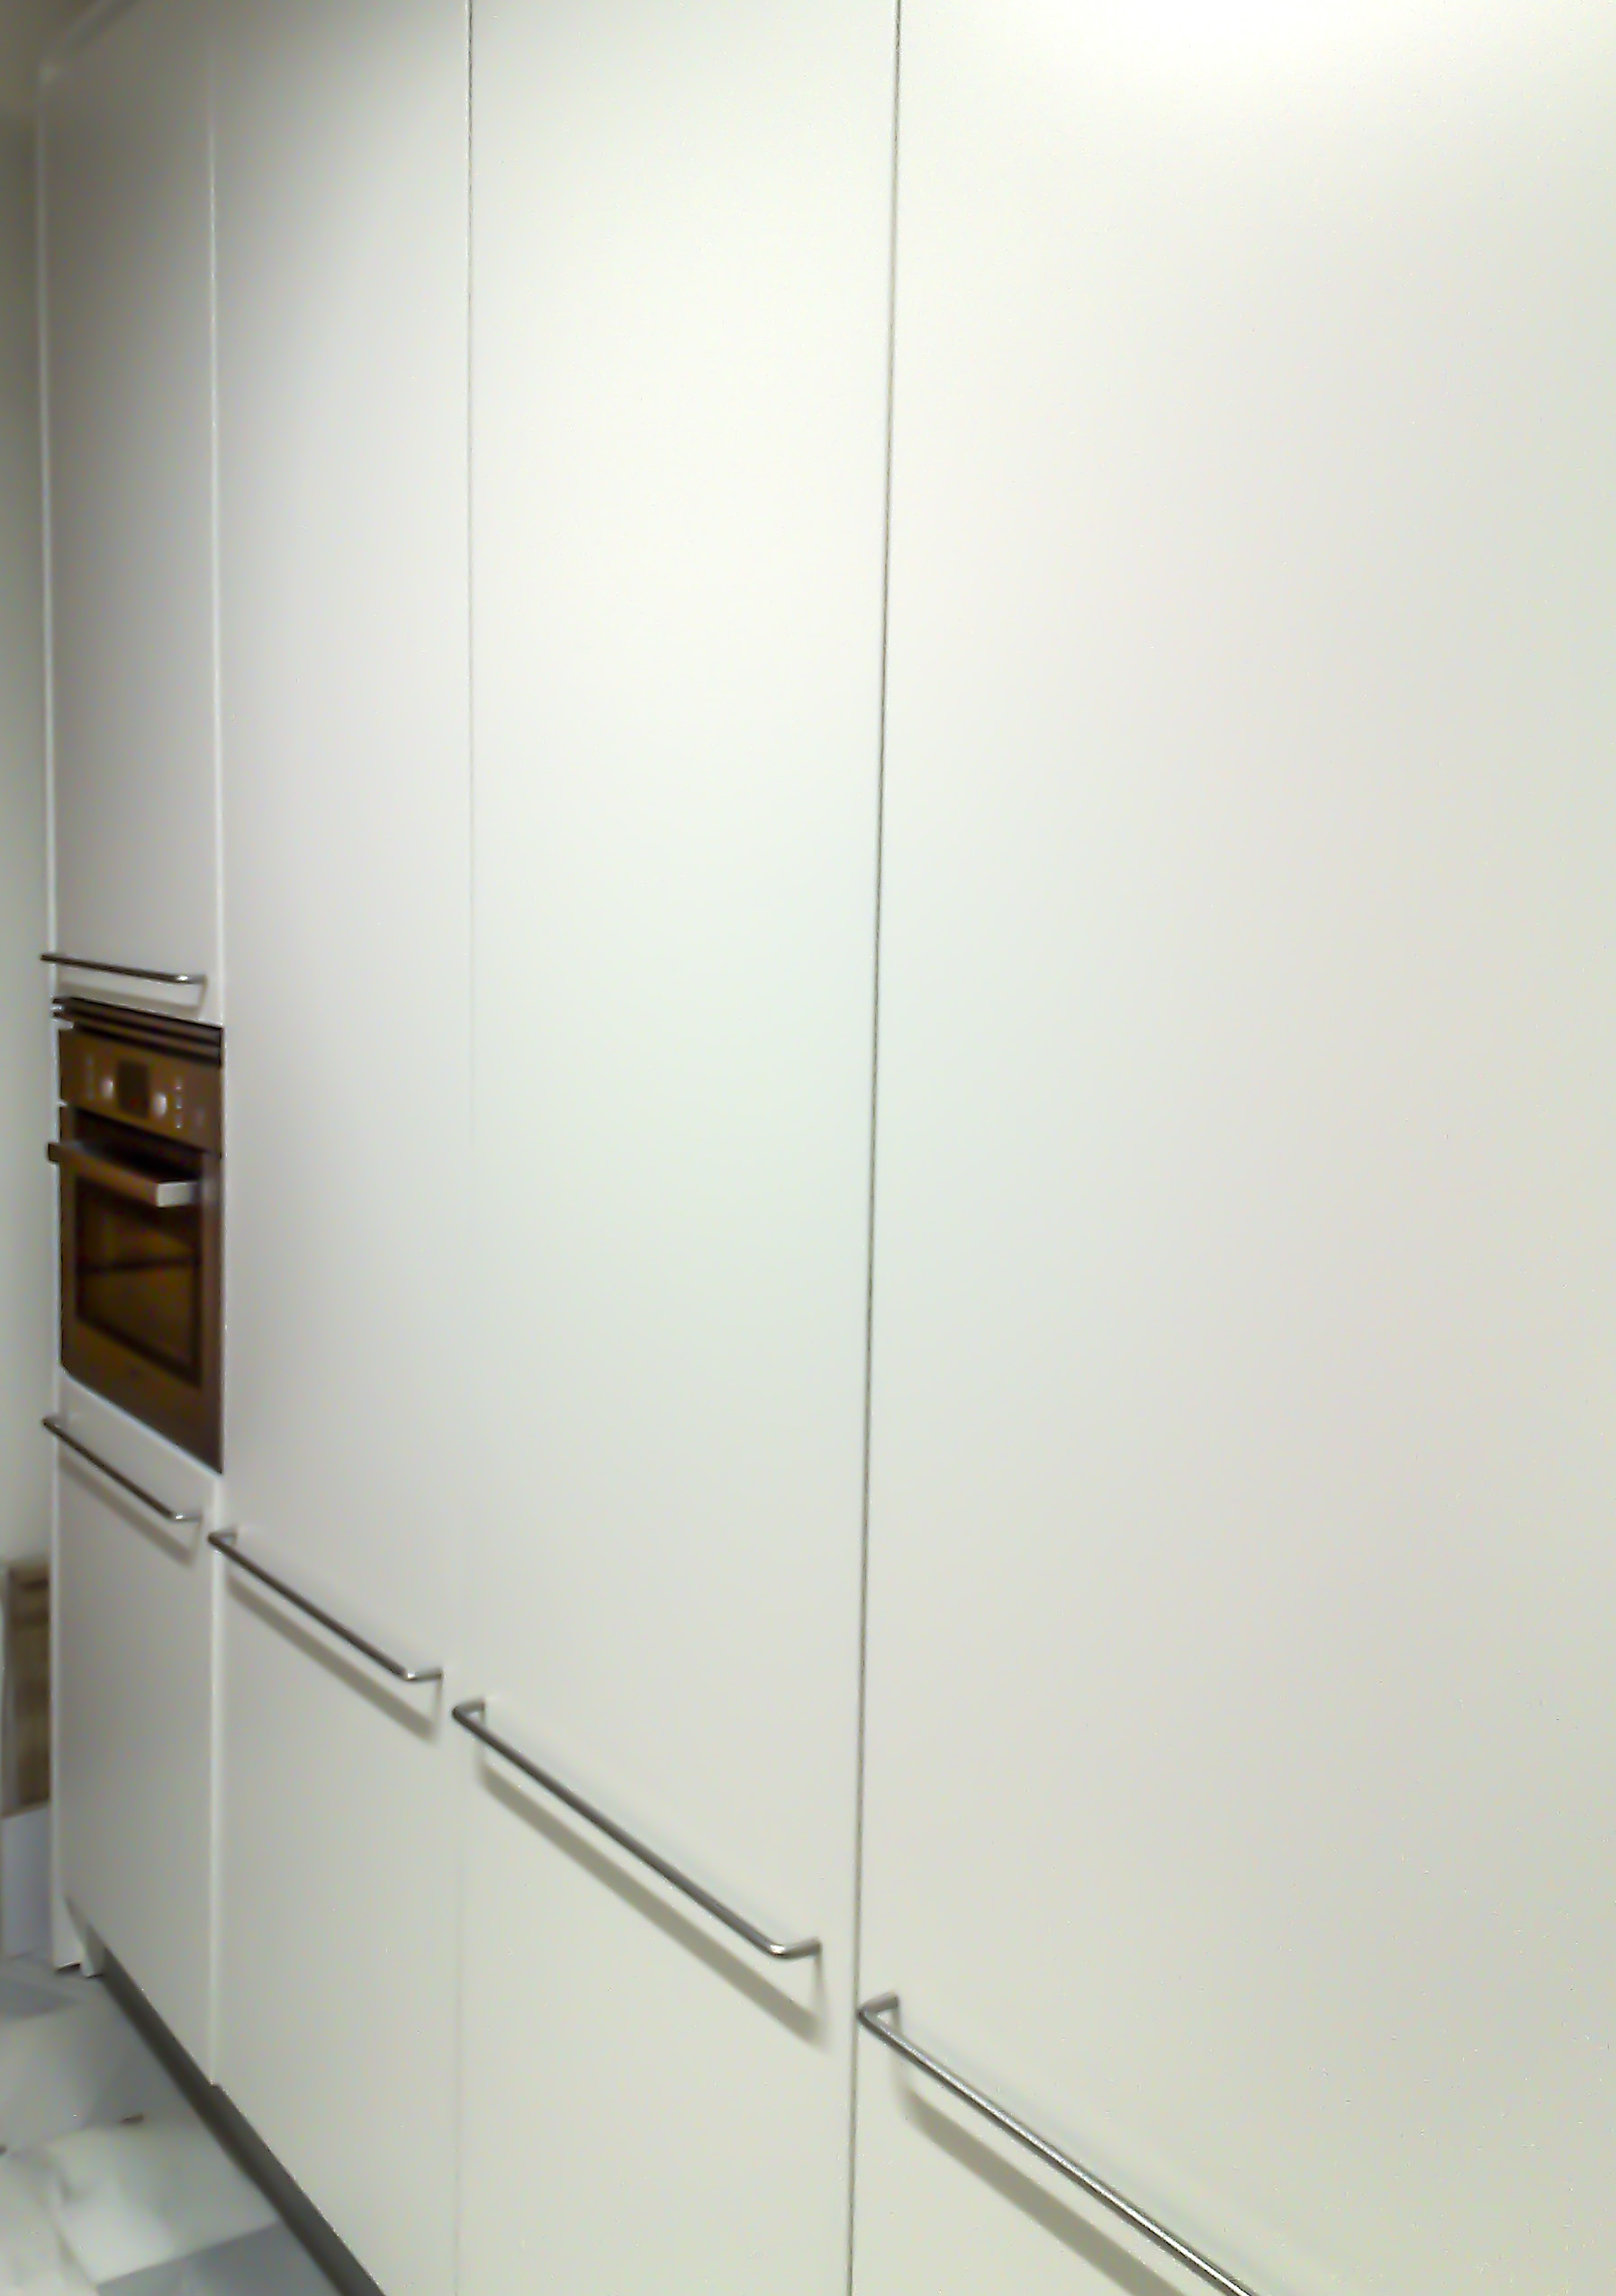 El frente de armario de la cocina incluye el horno con microondas, el frigorífico, el congelador y la despensa